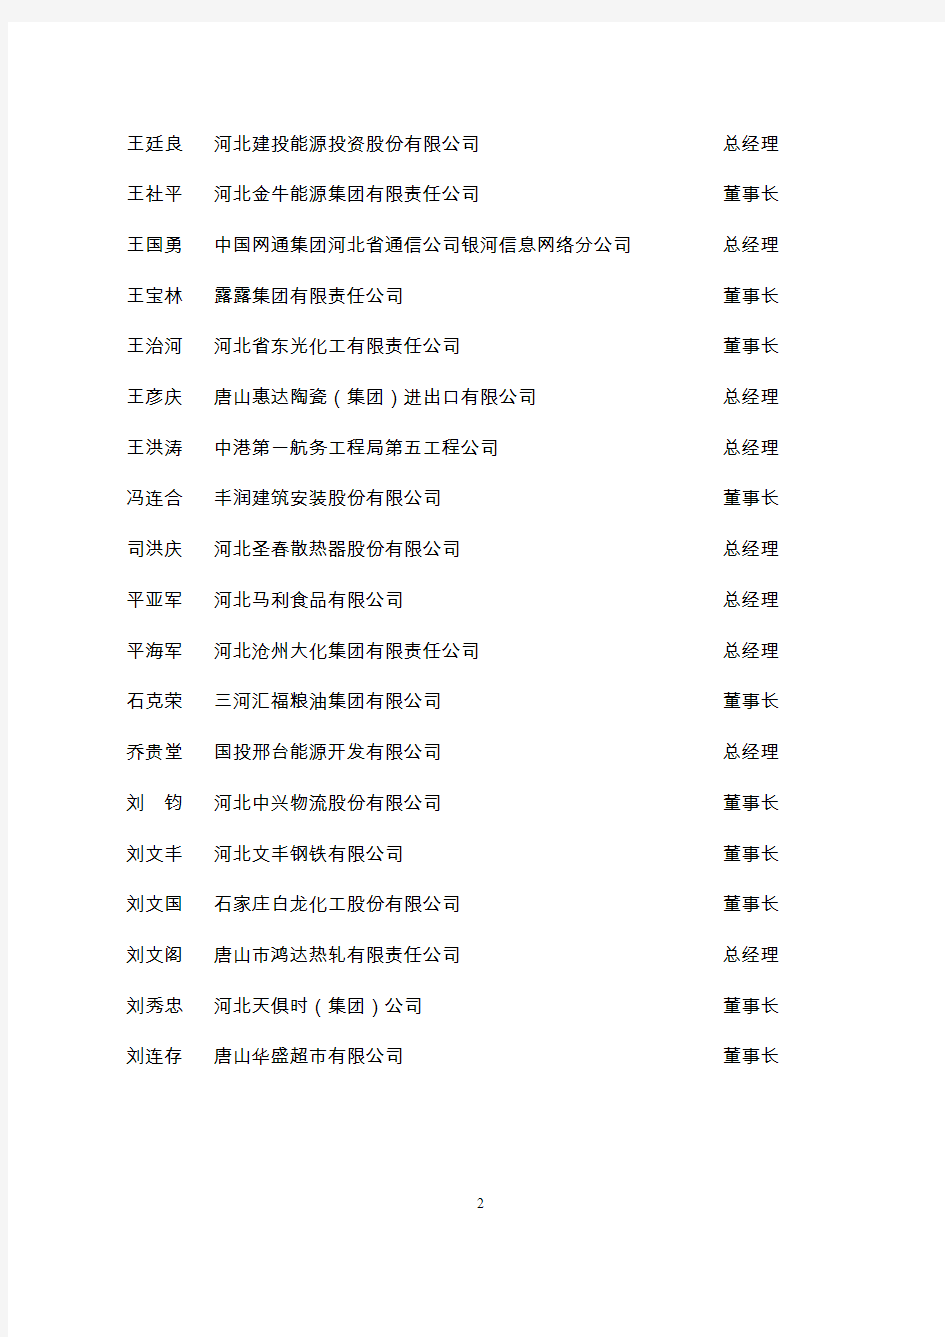 河北省优秀企业家名单(共157名)